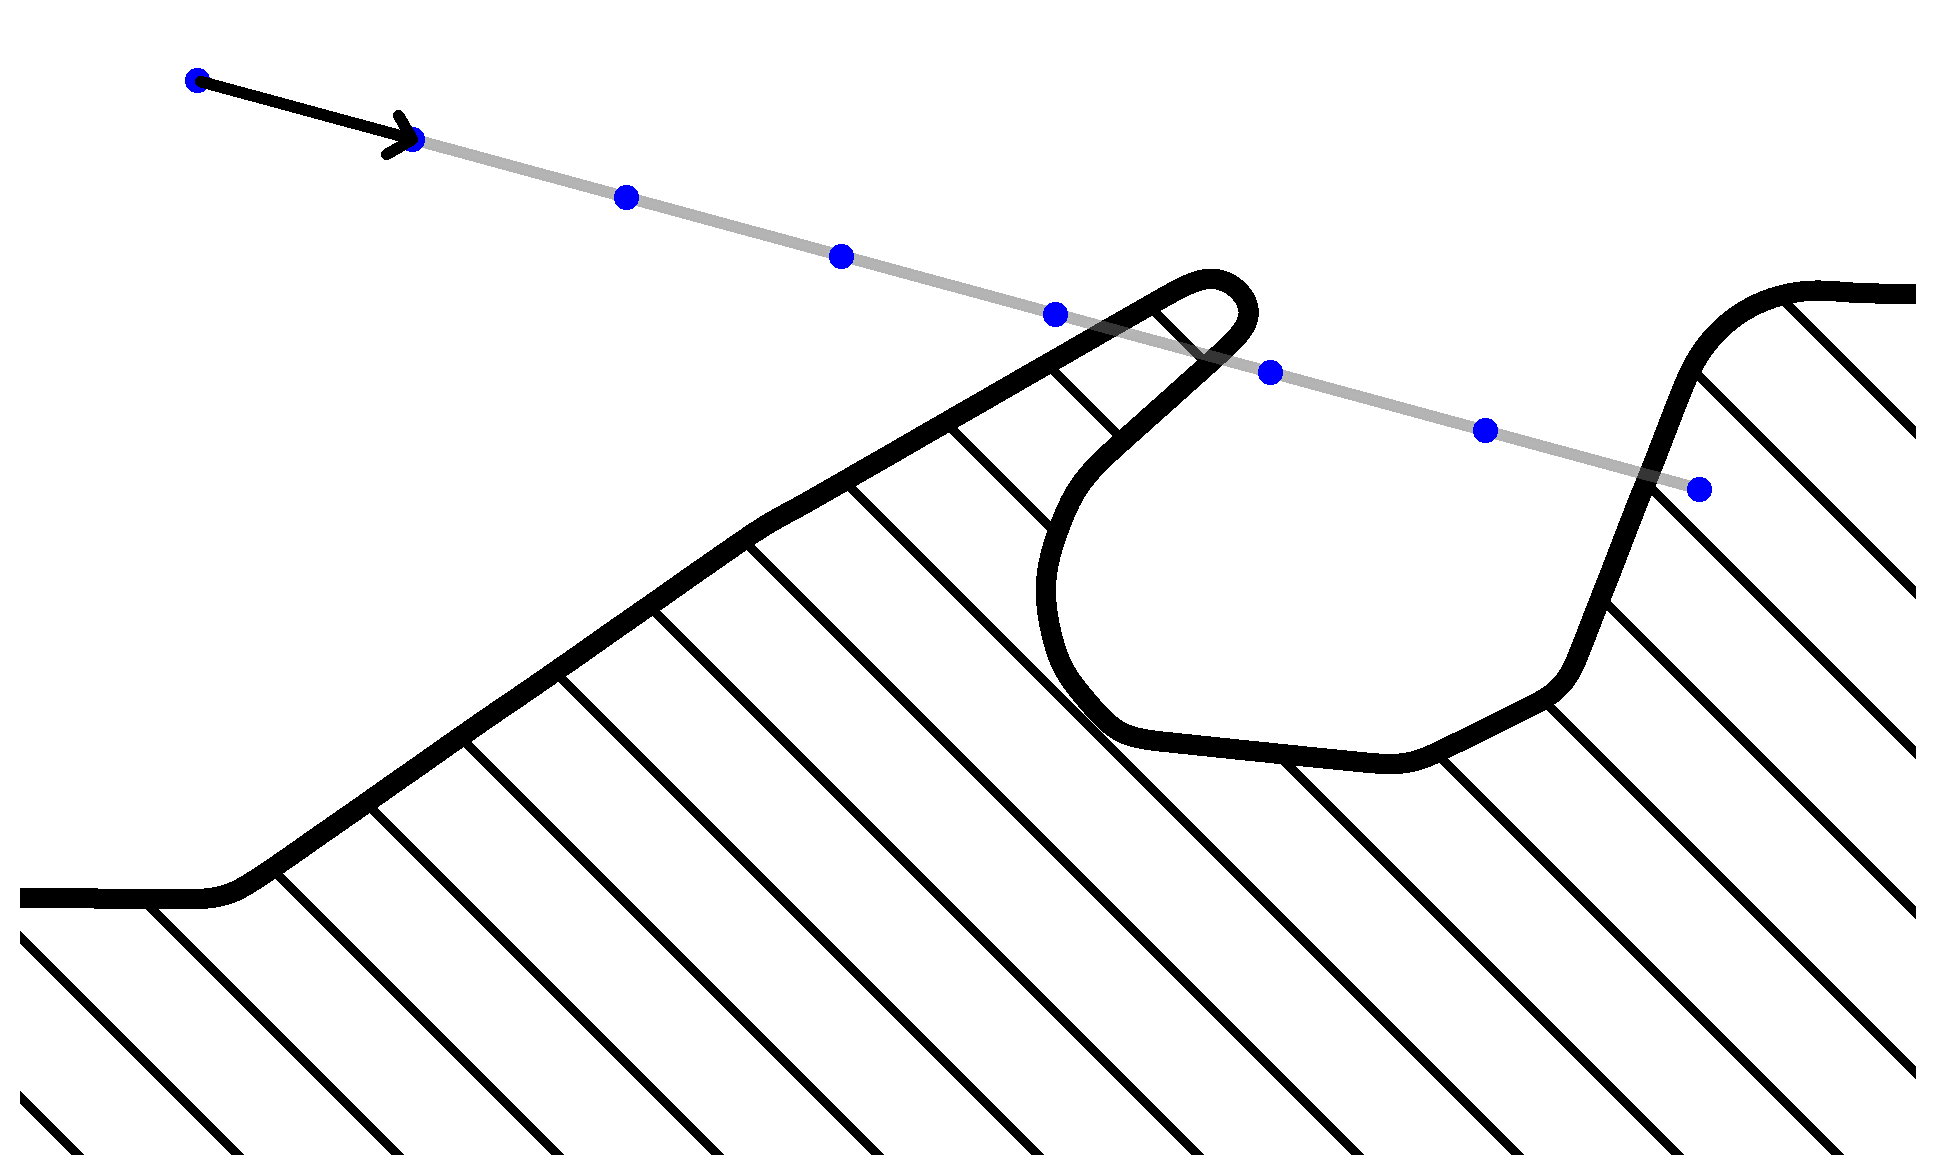 ilustracion que muestra el funcionamiento del algoritmo de caminata de rayos